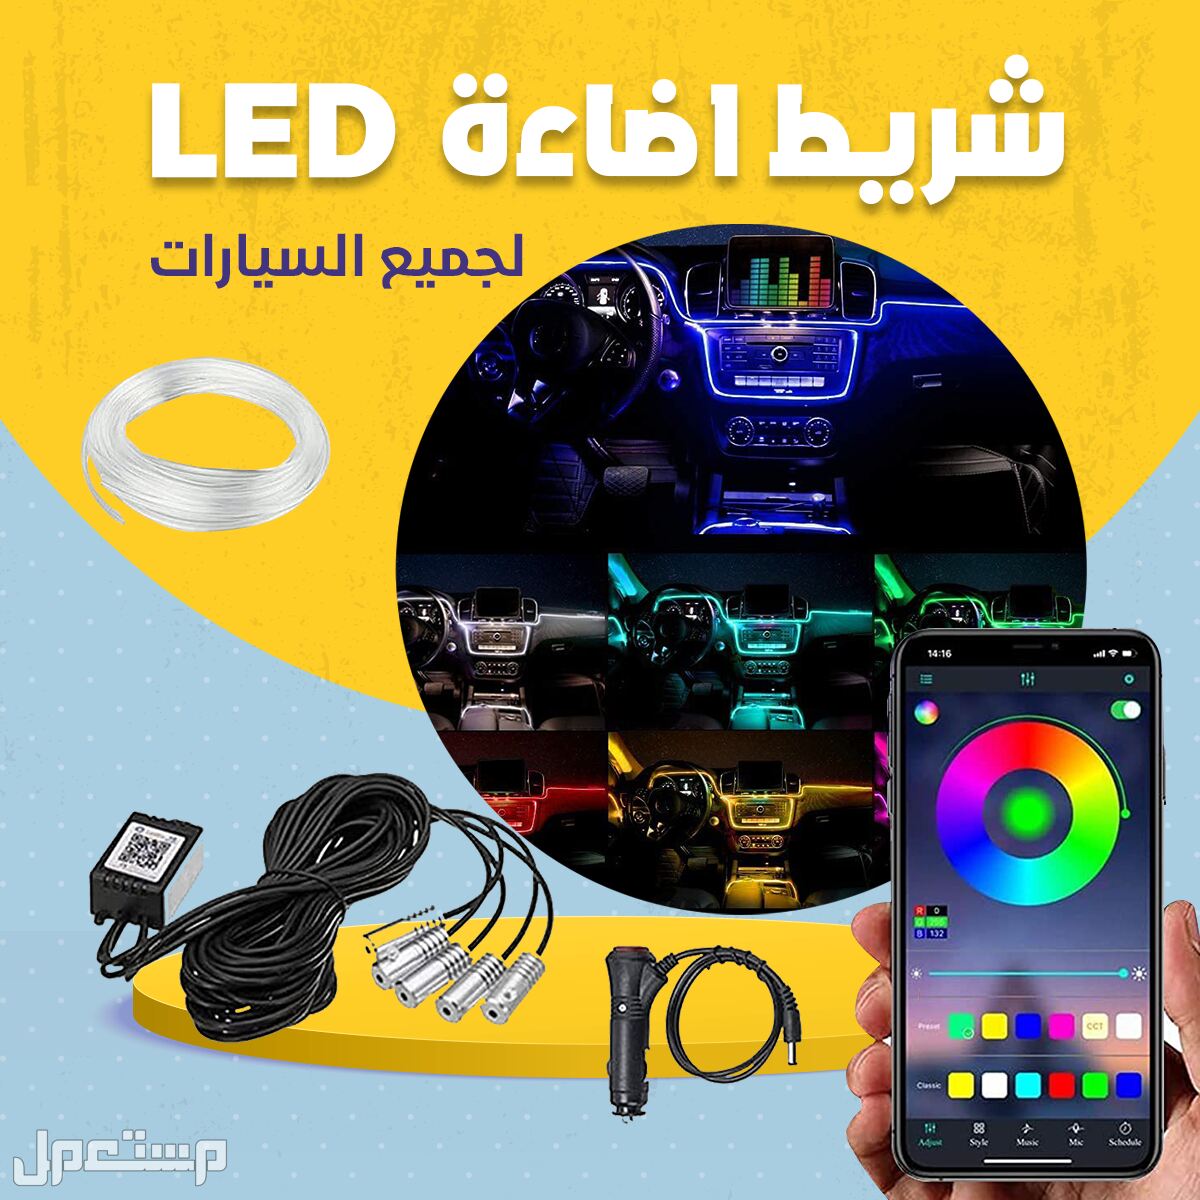 شريط اضاءة LED مطور لجميع السيارات متعدد الإضاءة وبتطبيق علي جوالك متوفر للطلب لكل المدن والتوصيل والشحن مجانا